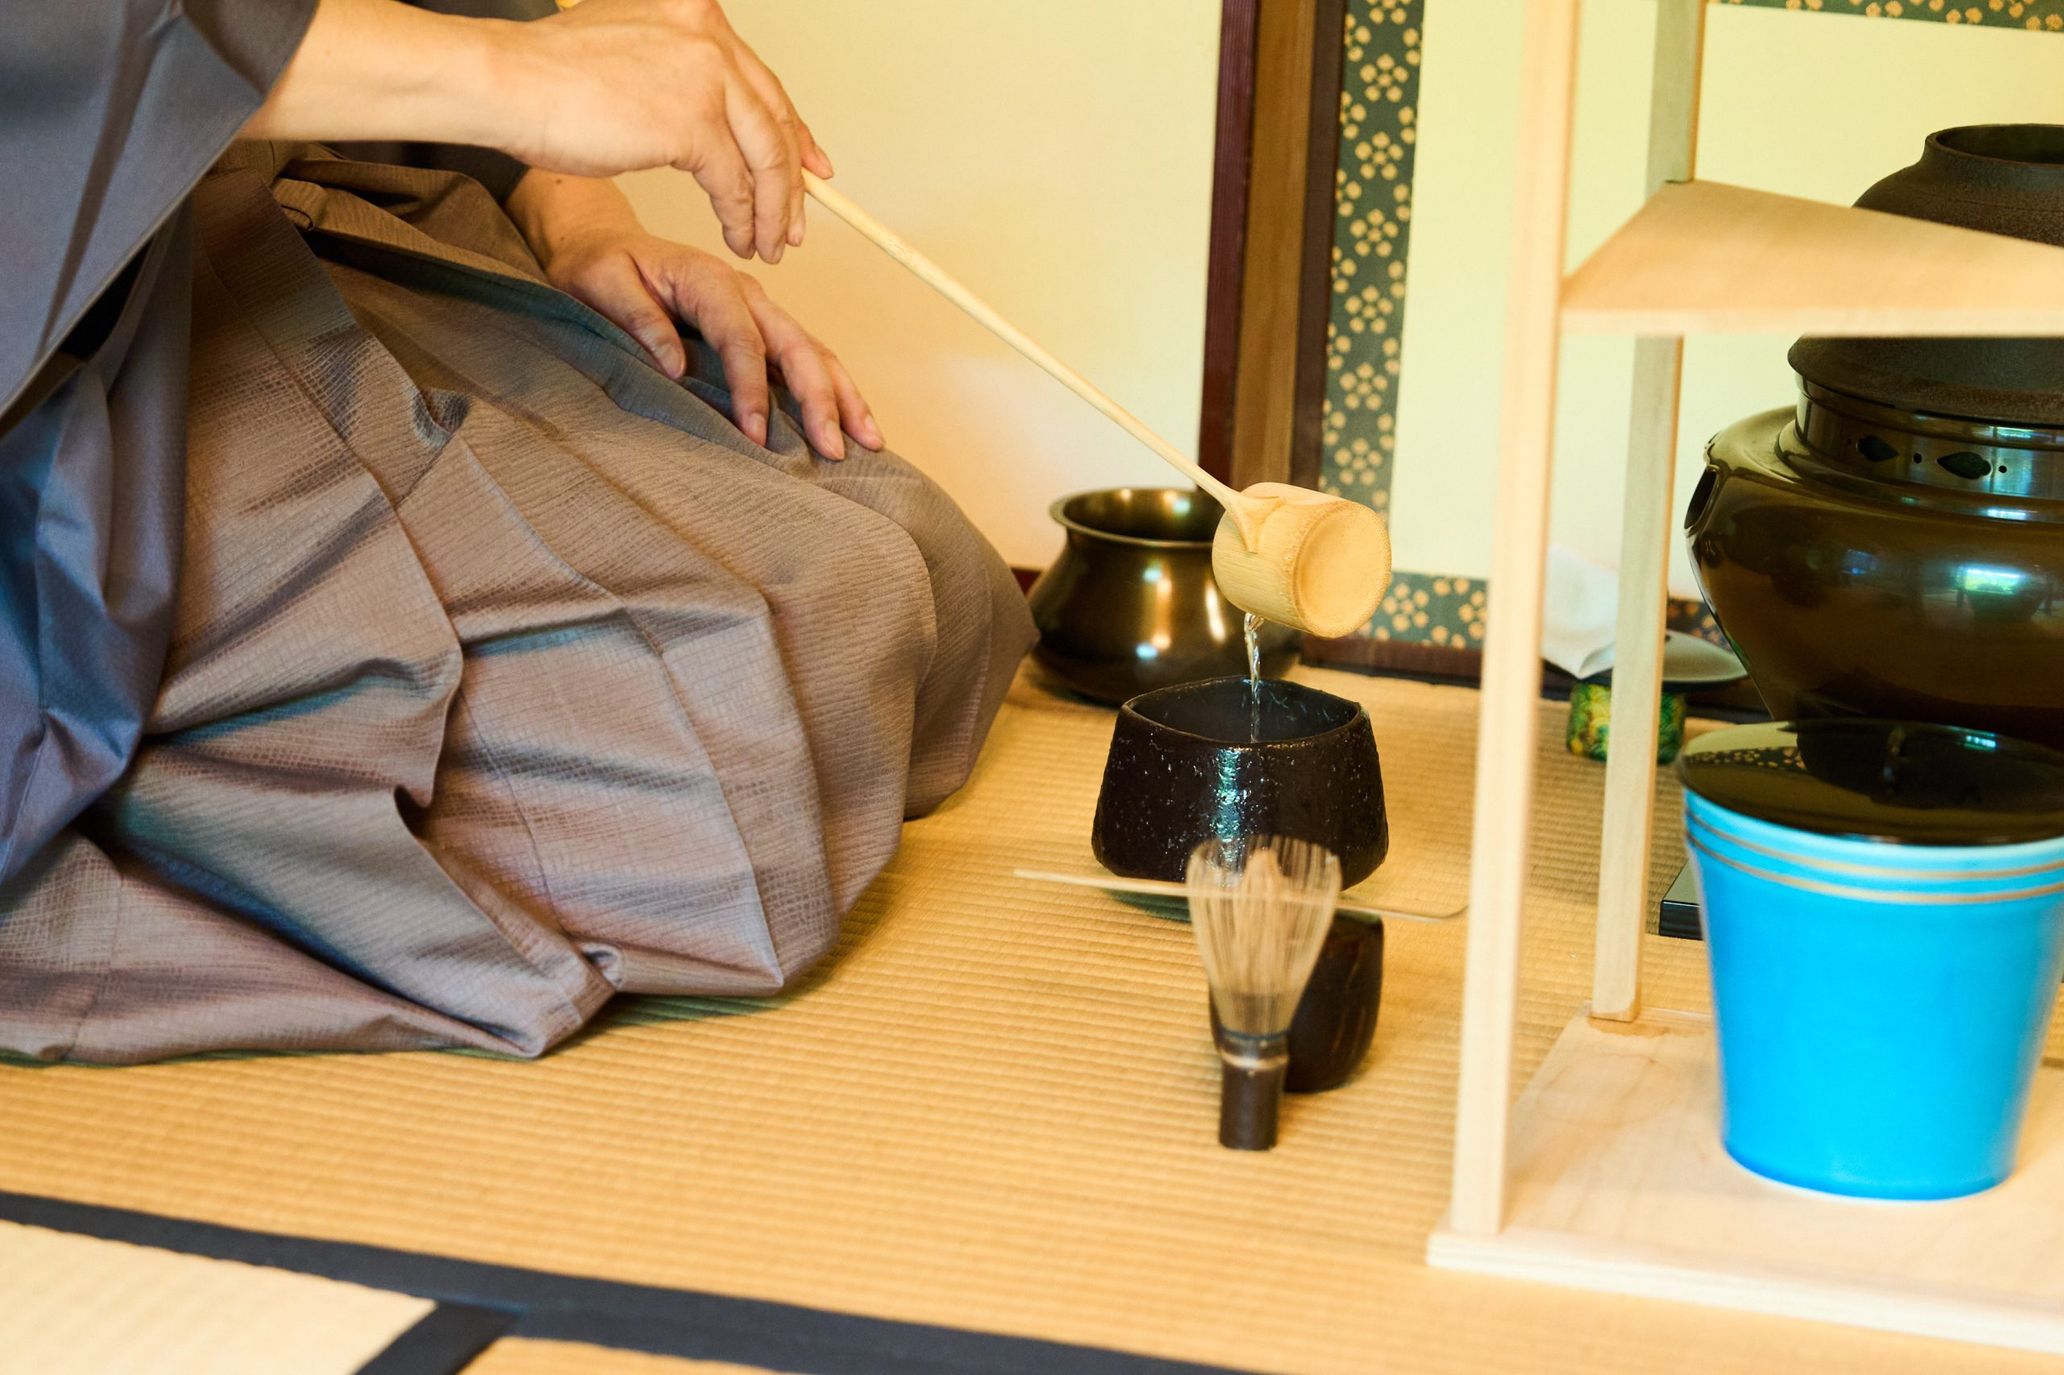 庭園美術館の日本庭園にある茶室「光華」ではお茶会も催された。同茶室の茶碗は杉本博司が手掛けている。